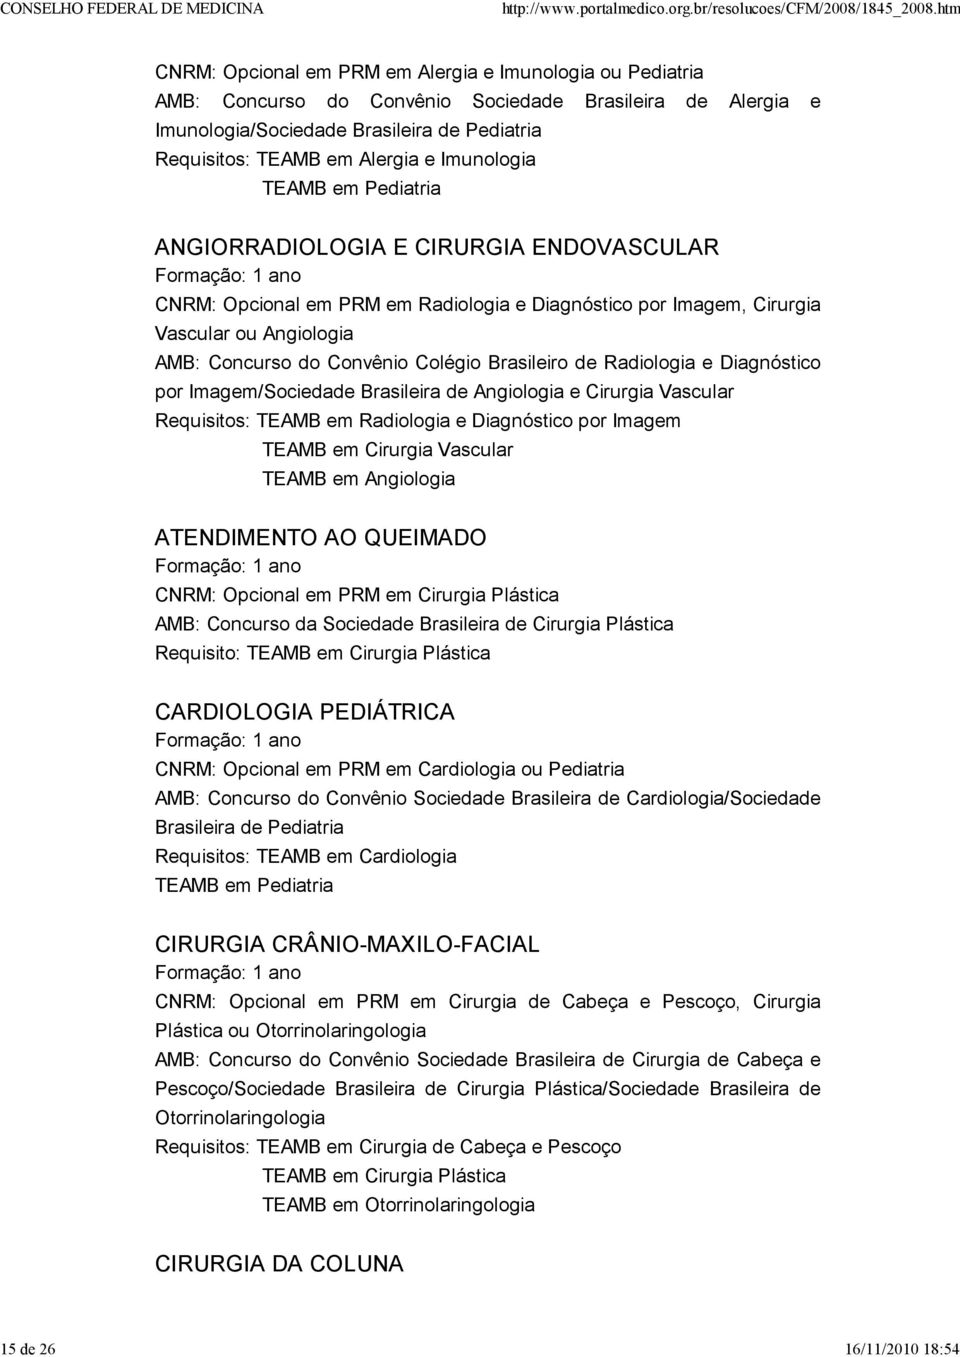 AMB: Concurso do Convênio Colégio Brasileiro de Radiologia e Diagnóstico por Imagem/Sociedade Brasileira de Angiologia e Cirurgia Vascular Requisitos: TEAMB em Radiologia e Diagnóstico por Imagem